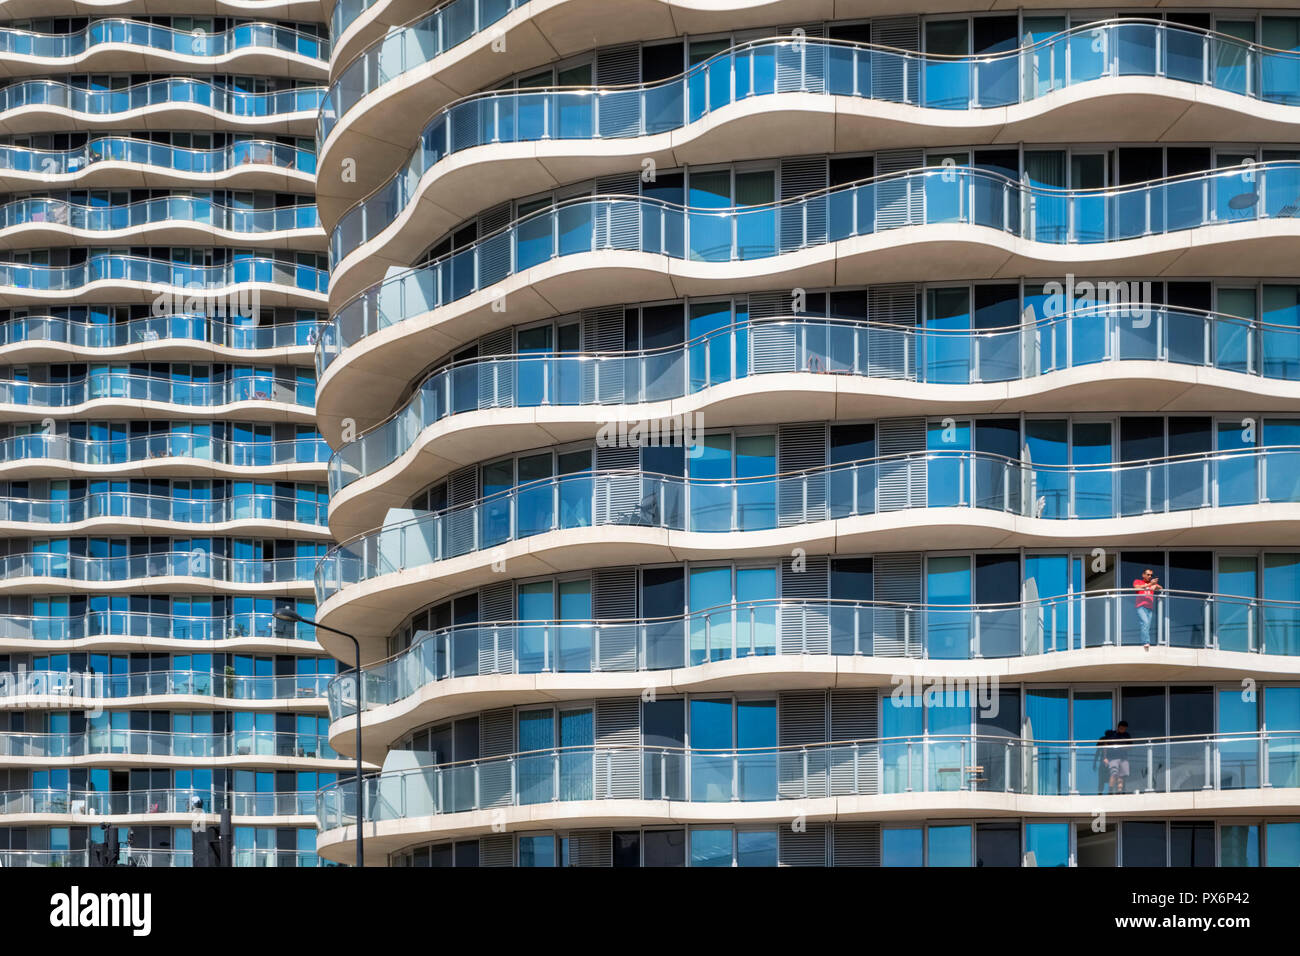 Dettaglio di alta edifici di appartamenti presso il Royal Victoria Dock, Londra, Inghilterra, Regno Unito, architettura moderna Foto Stock